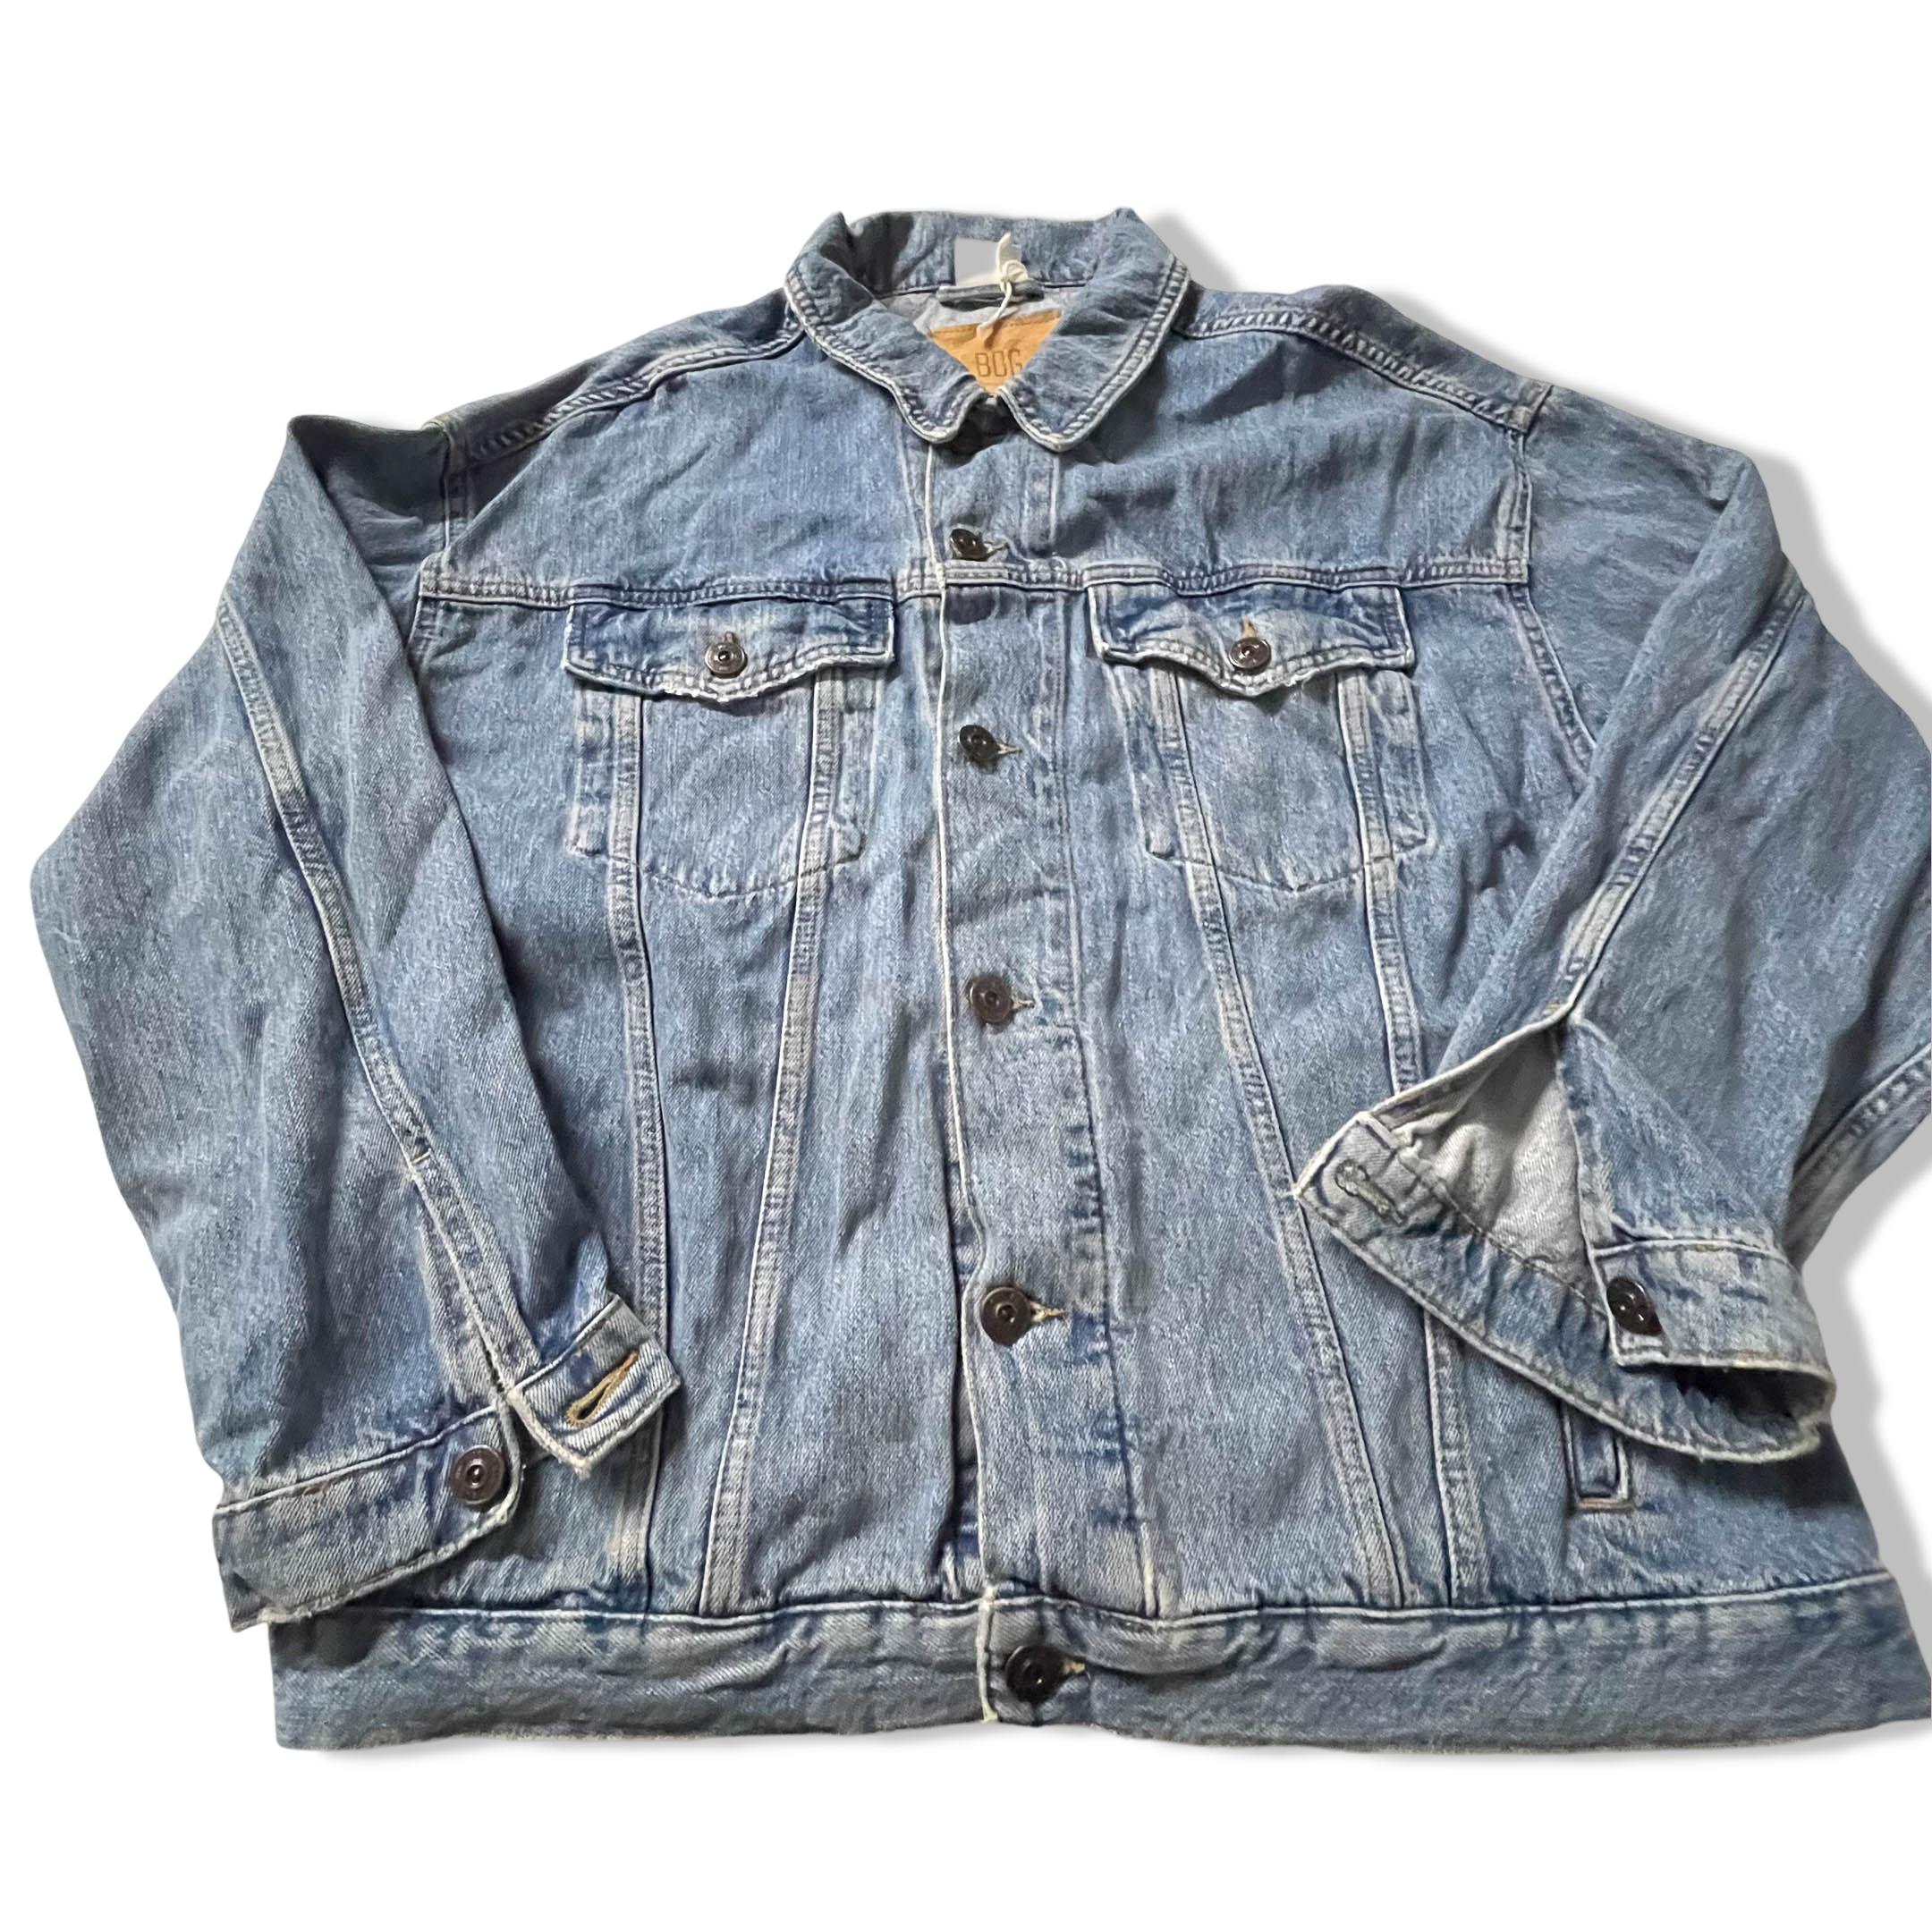 Vintage BDG Urban Outfitter men's denim blue jacket in M|L29 W 24| SKU 2483